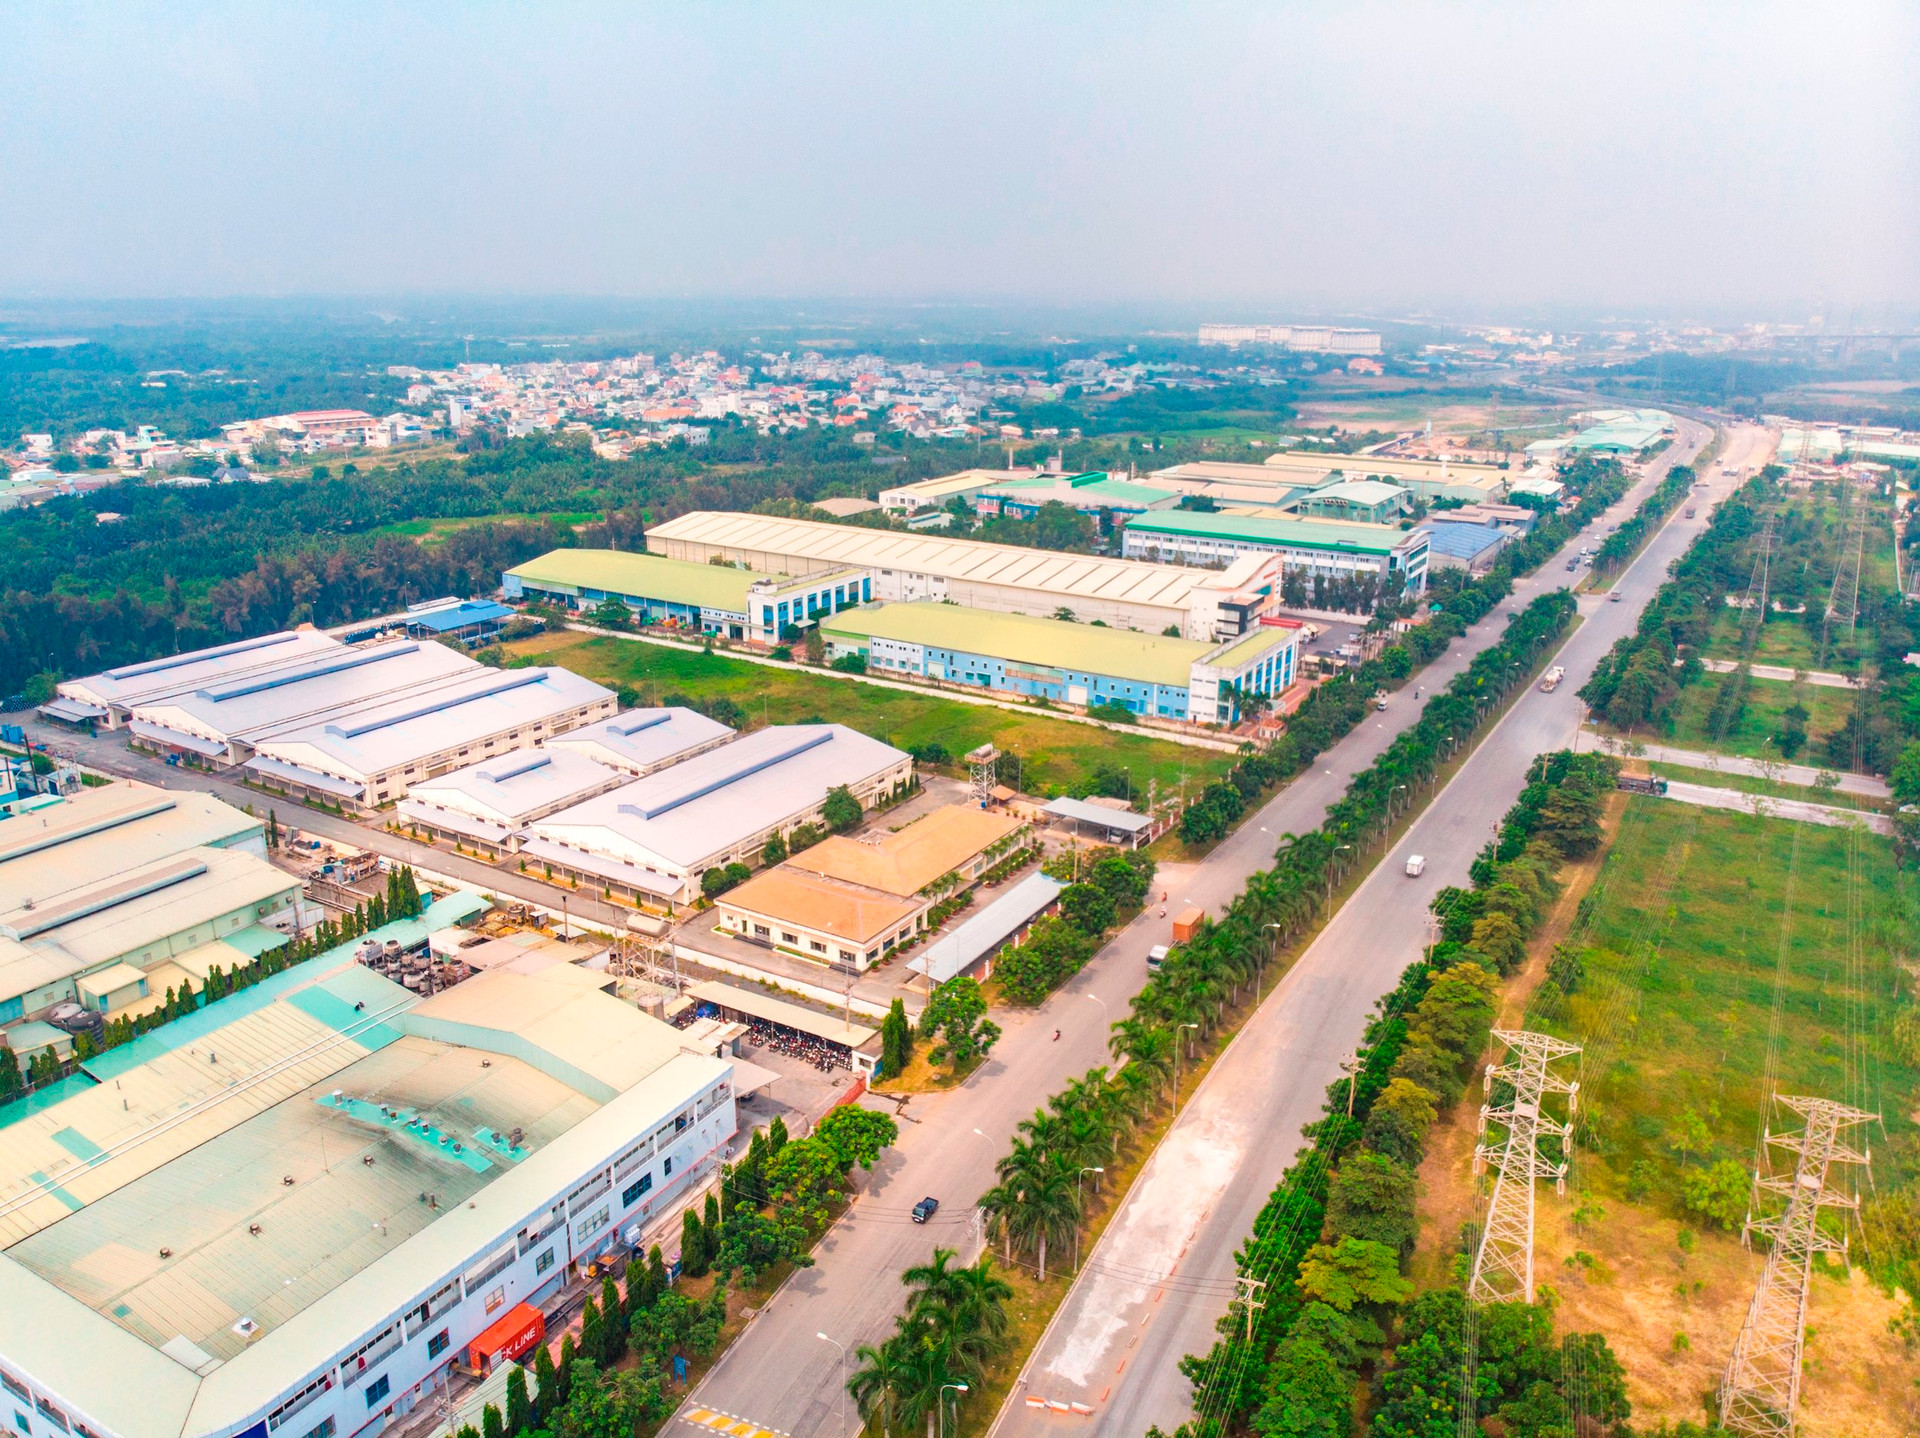 Doanh nghiệp liên quan Becamex IDC vừa được chấp thuận đầu tư khu công nghiệp gần 470ha tại Bình Thuận